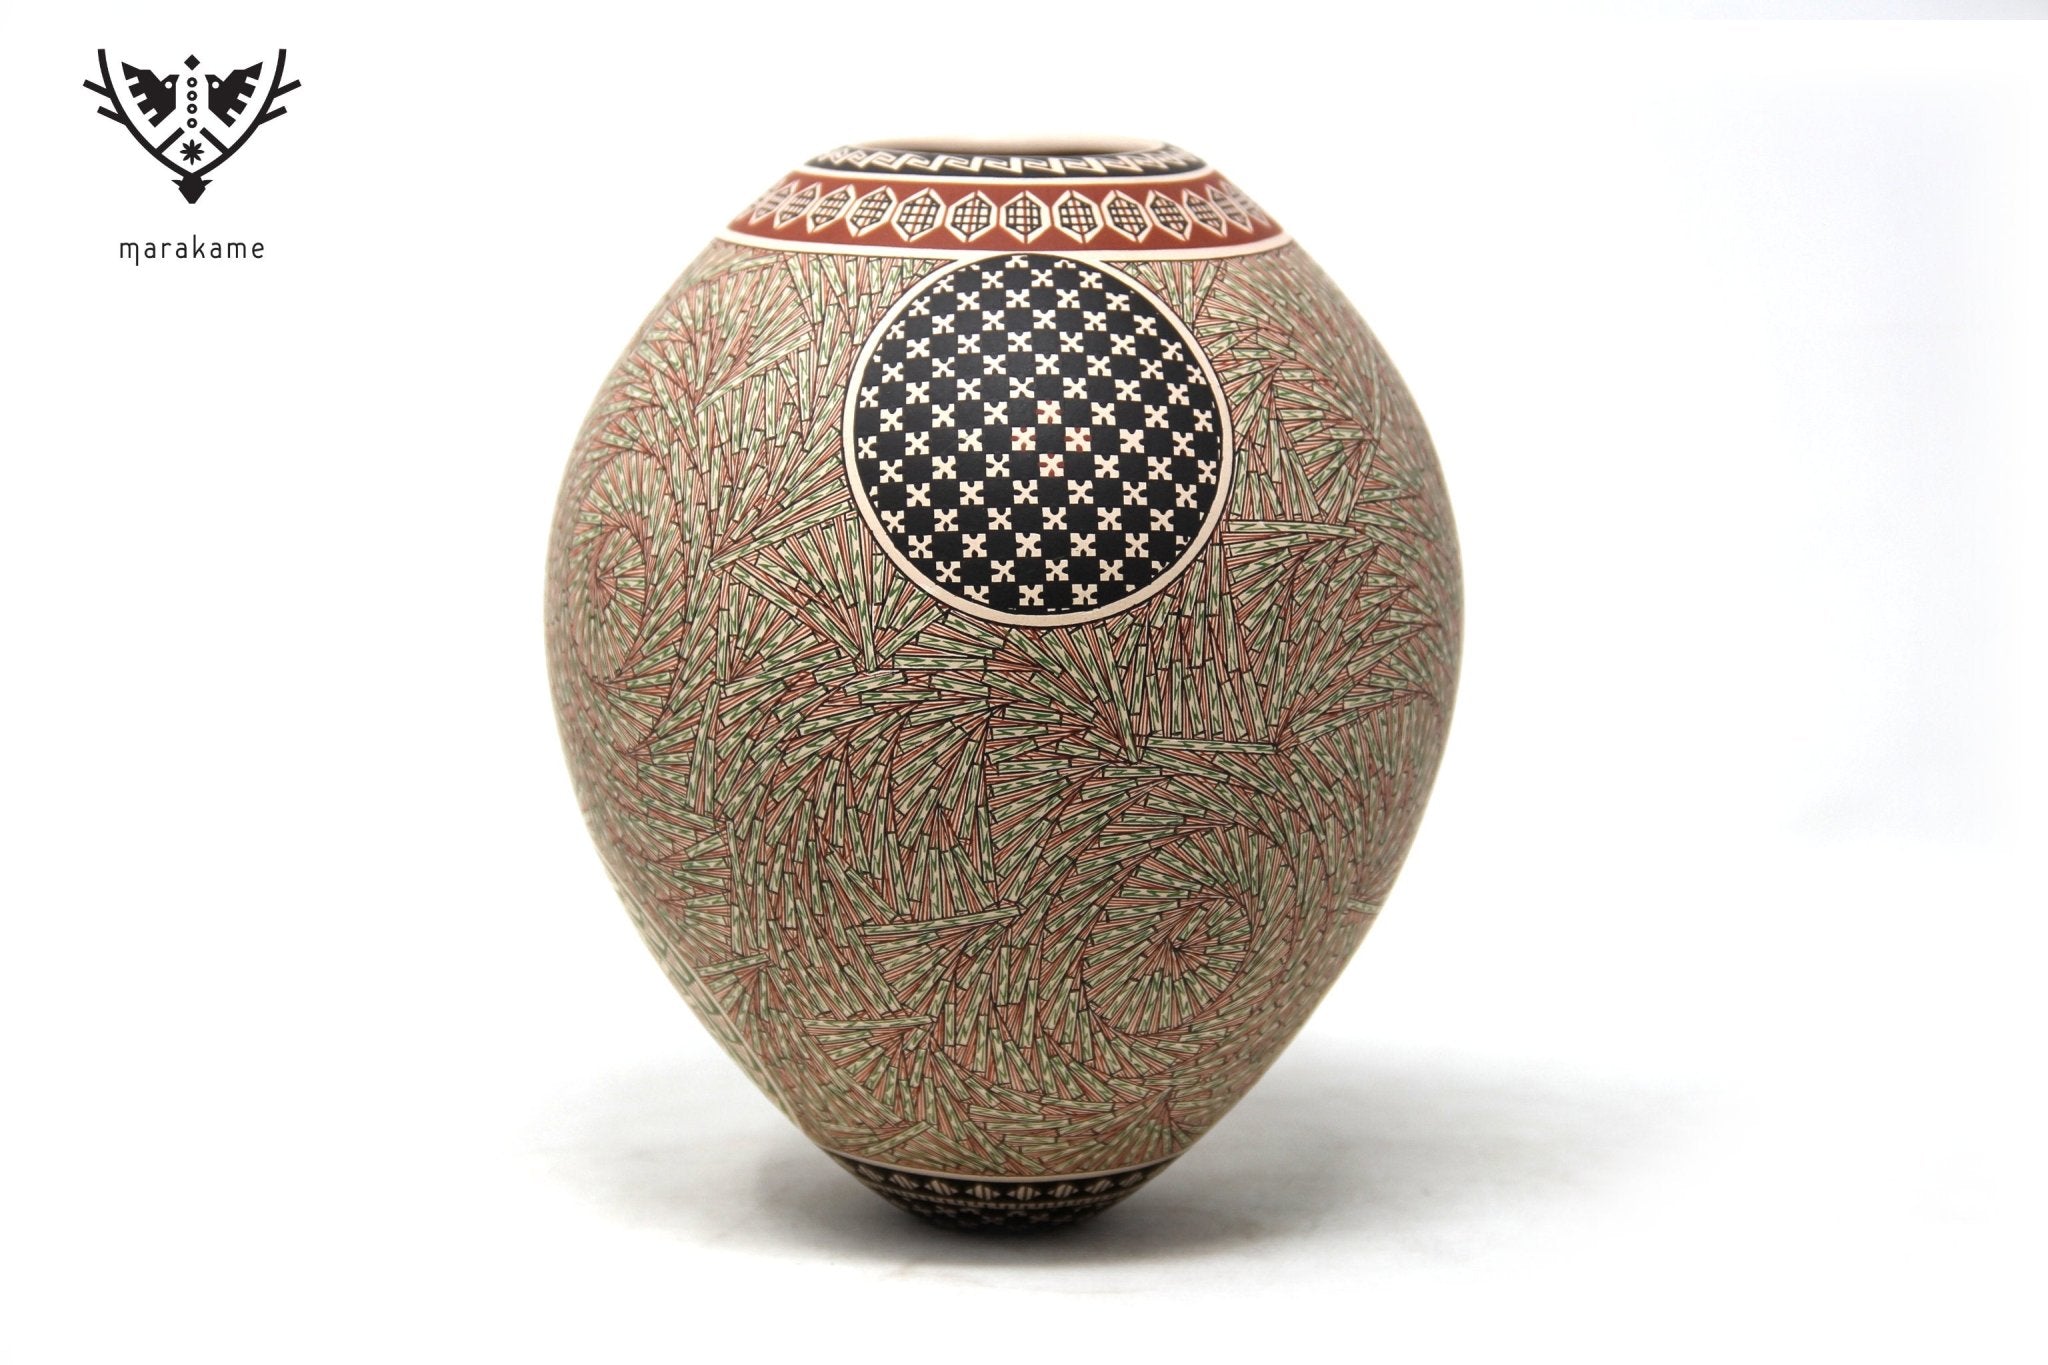 Mata Ortiz Keramik – Fein bemaltes Stück II – Huichol Art – Marakame